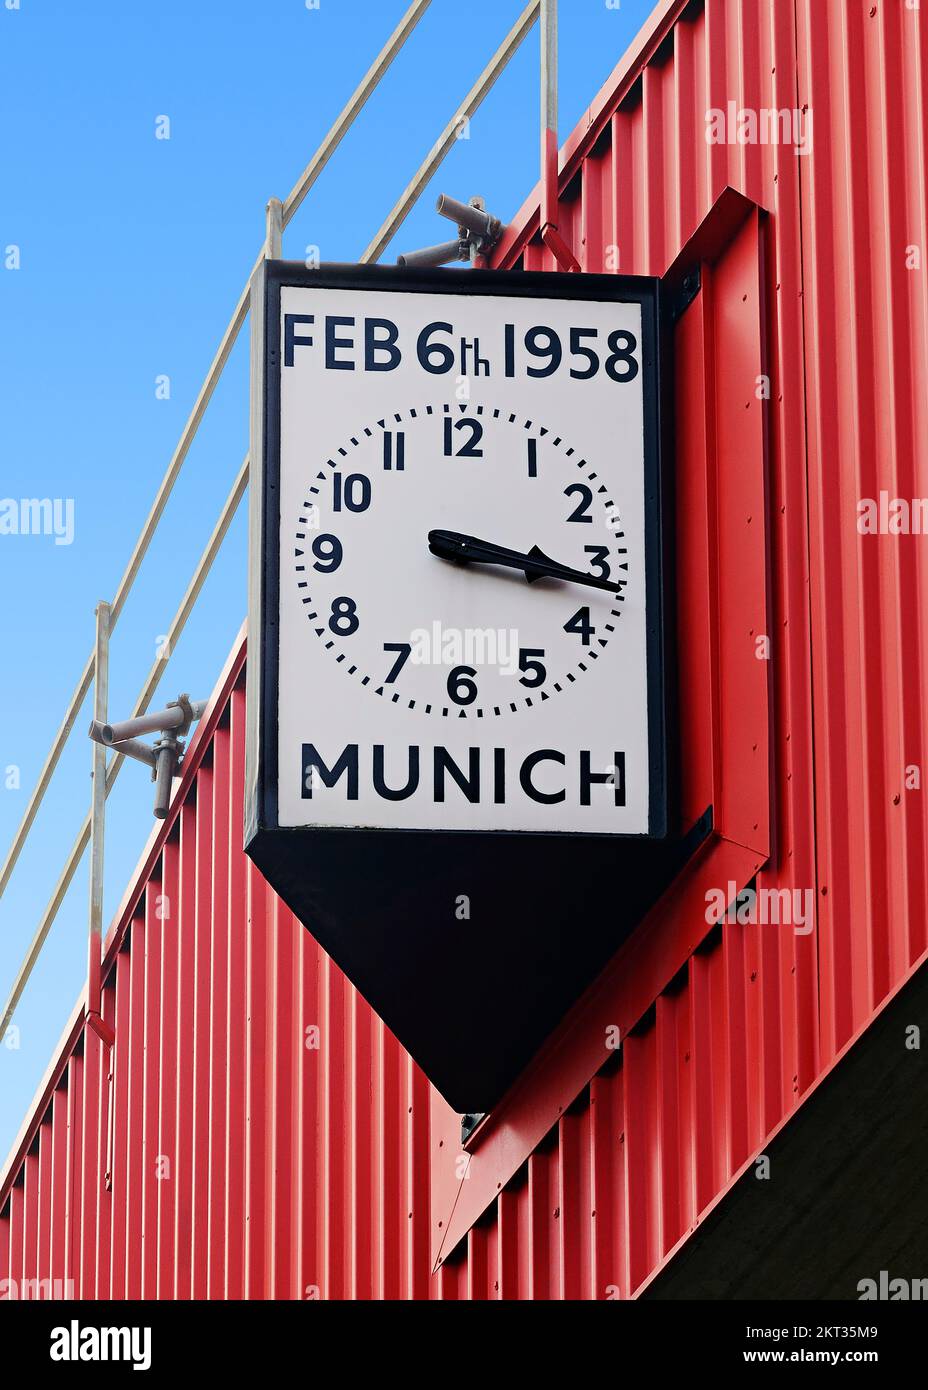 Die Münchner Uhr im Old Trafford Stadion zeigt die Uhrzeit und das Datum der Flugkatastrophe in München, die das man United Team verwüstet hat. Manchester, Großbritannien Stockfoto